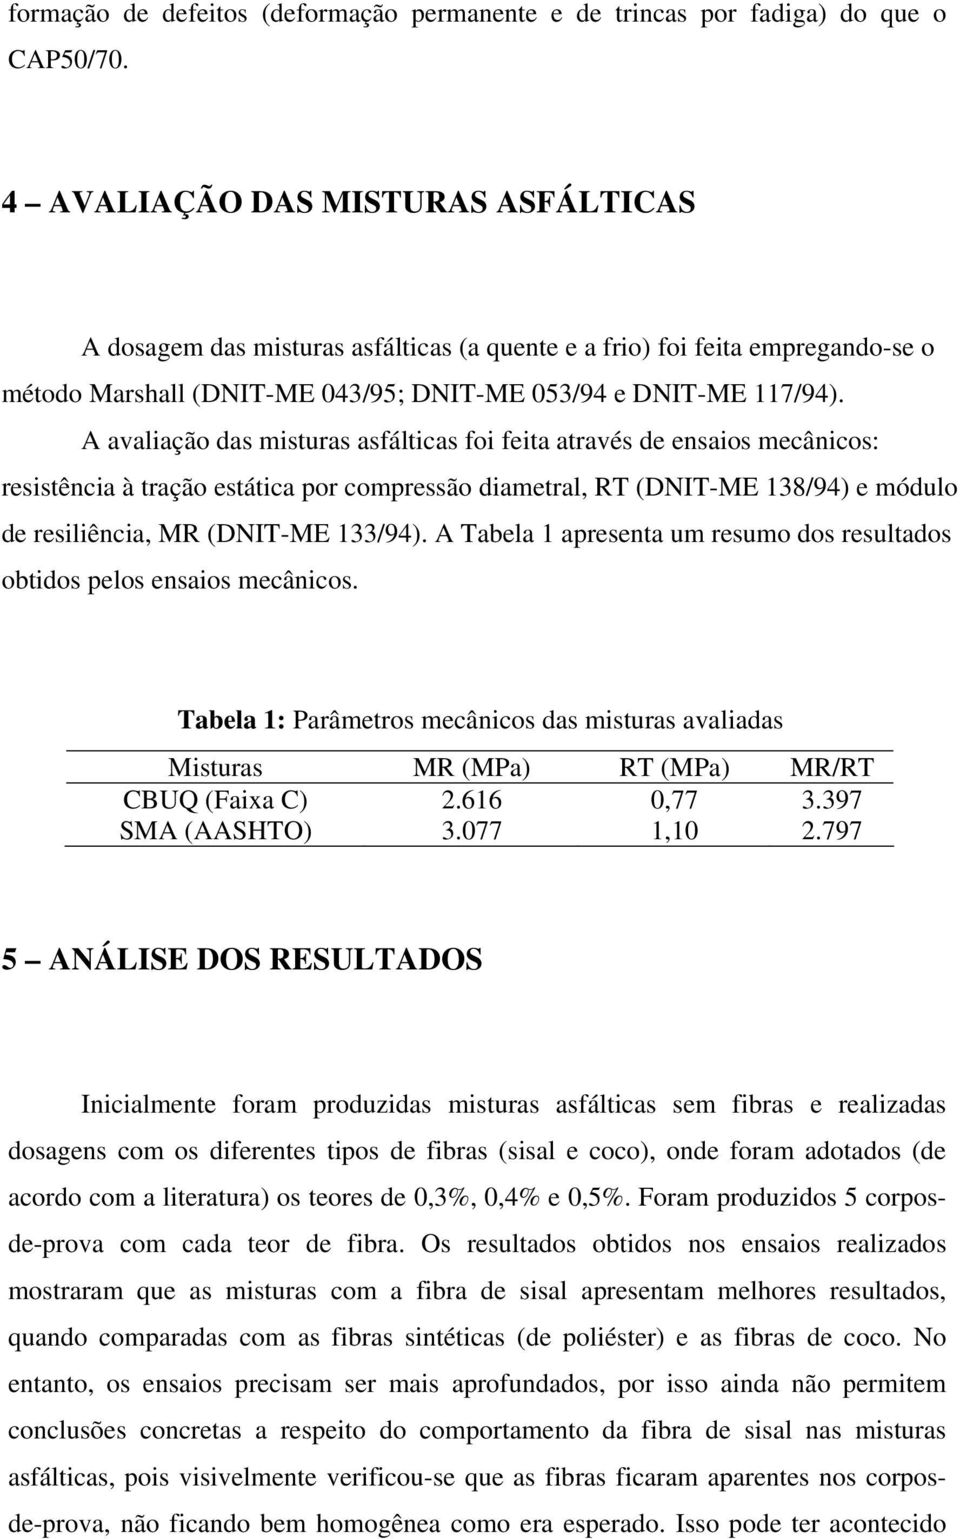 A avaliação das misturas asfálticas foi feita através de ensaios mecânicos: resistência à tração estática por compressão diametral, RT (DNIT-ME 138/94) e módulo de resiliência, MR (DNIT-ME 133/94).